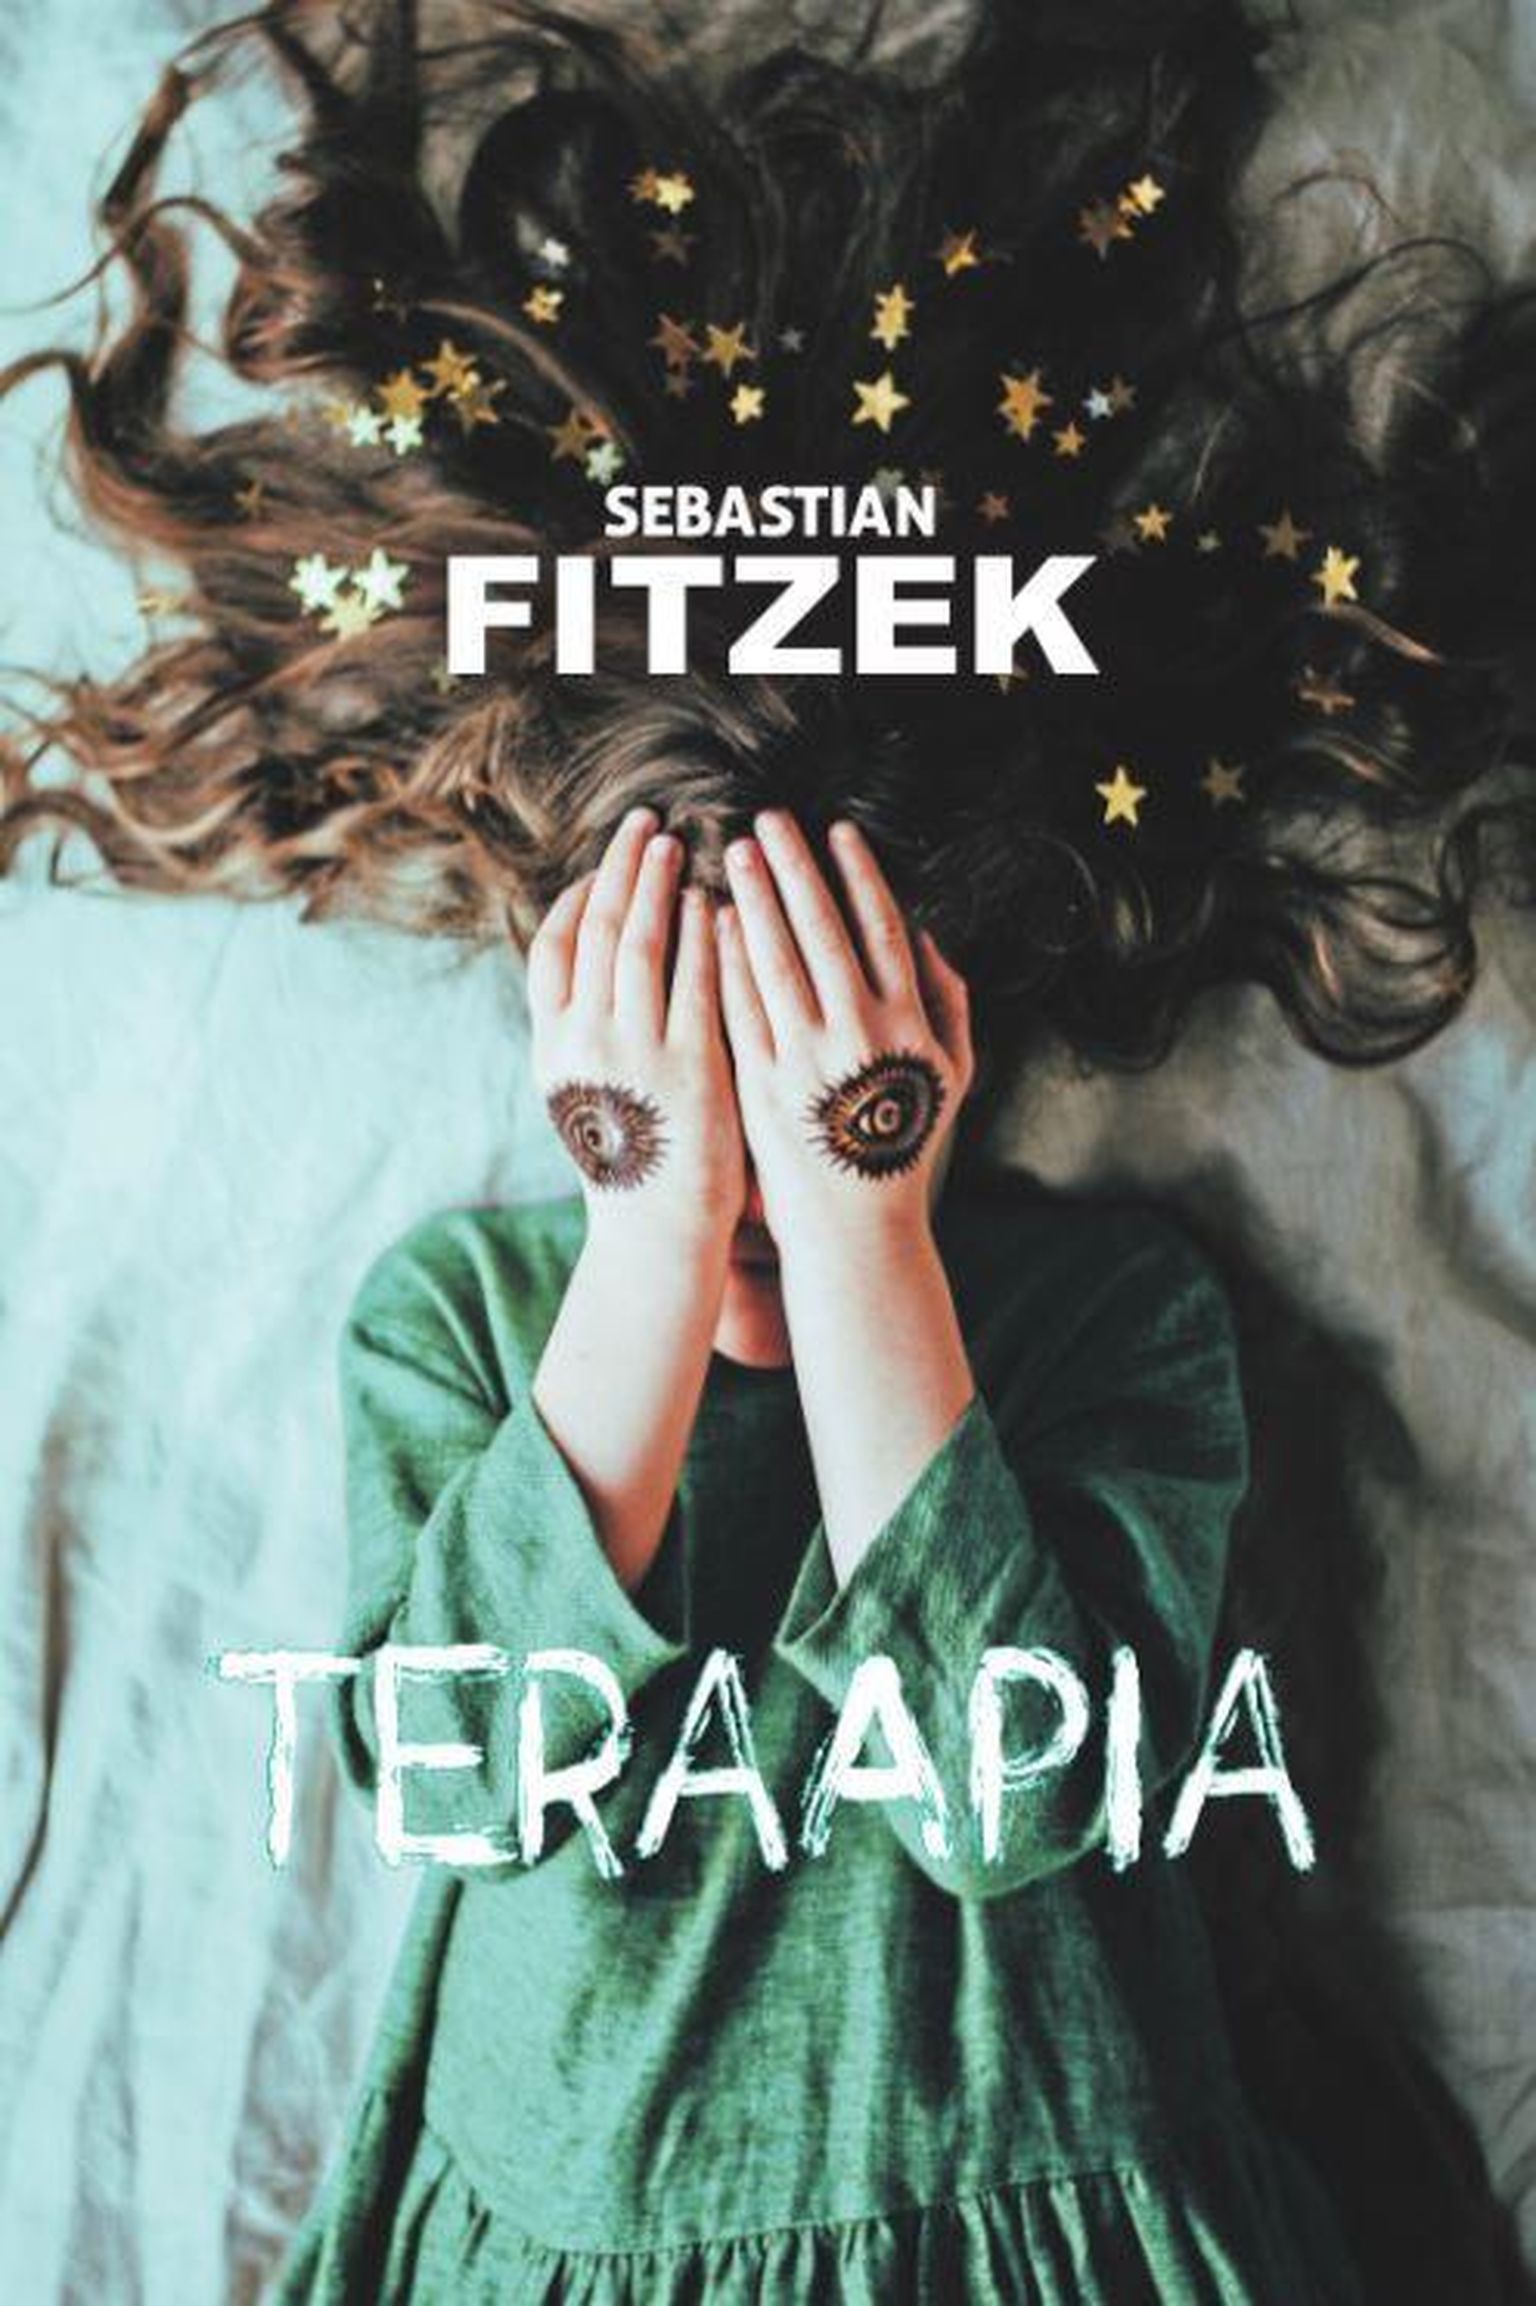 Sebastian Fitzek "Teraapia".